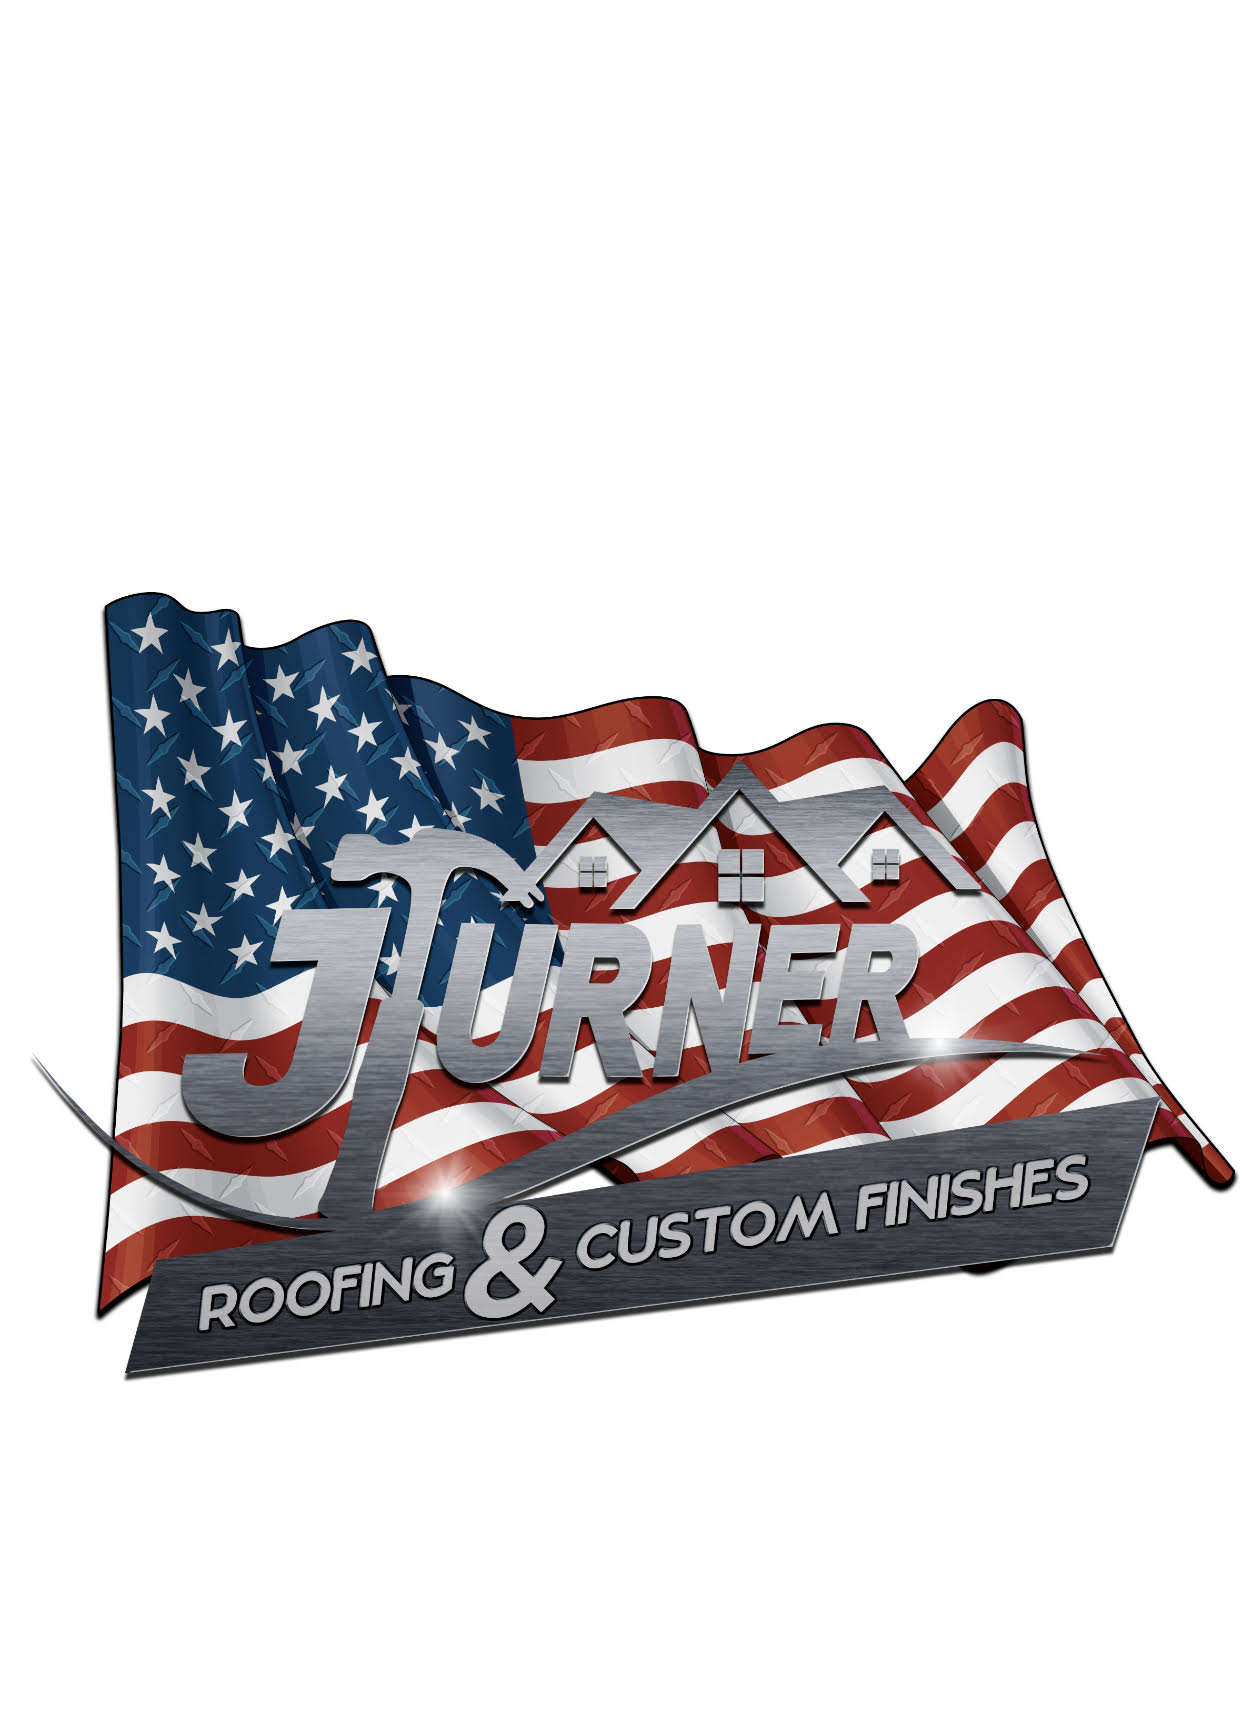 J. Turner Roofing & Custom Finishes LLC Logo